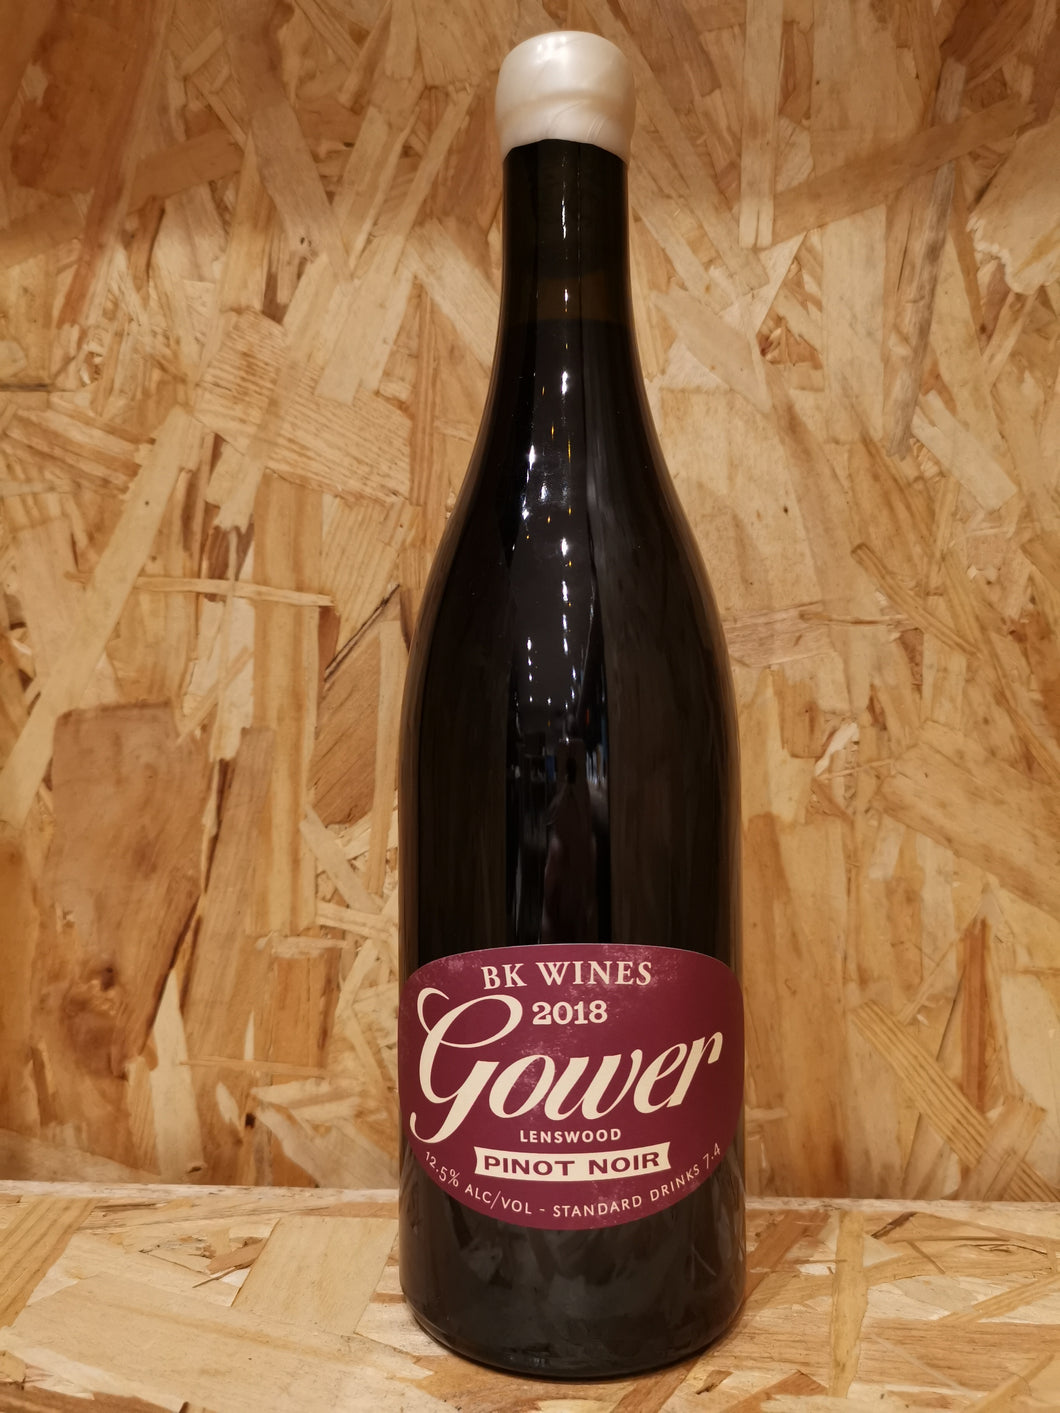 Gower Pinot Noir 2018 75cL